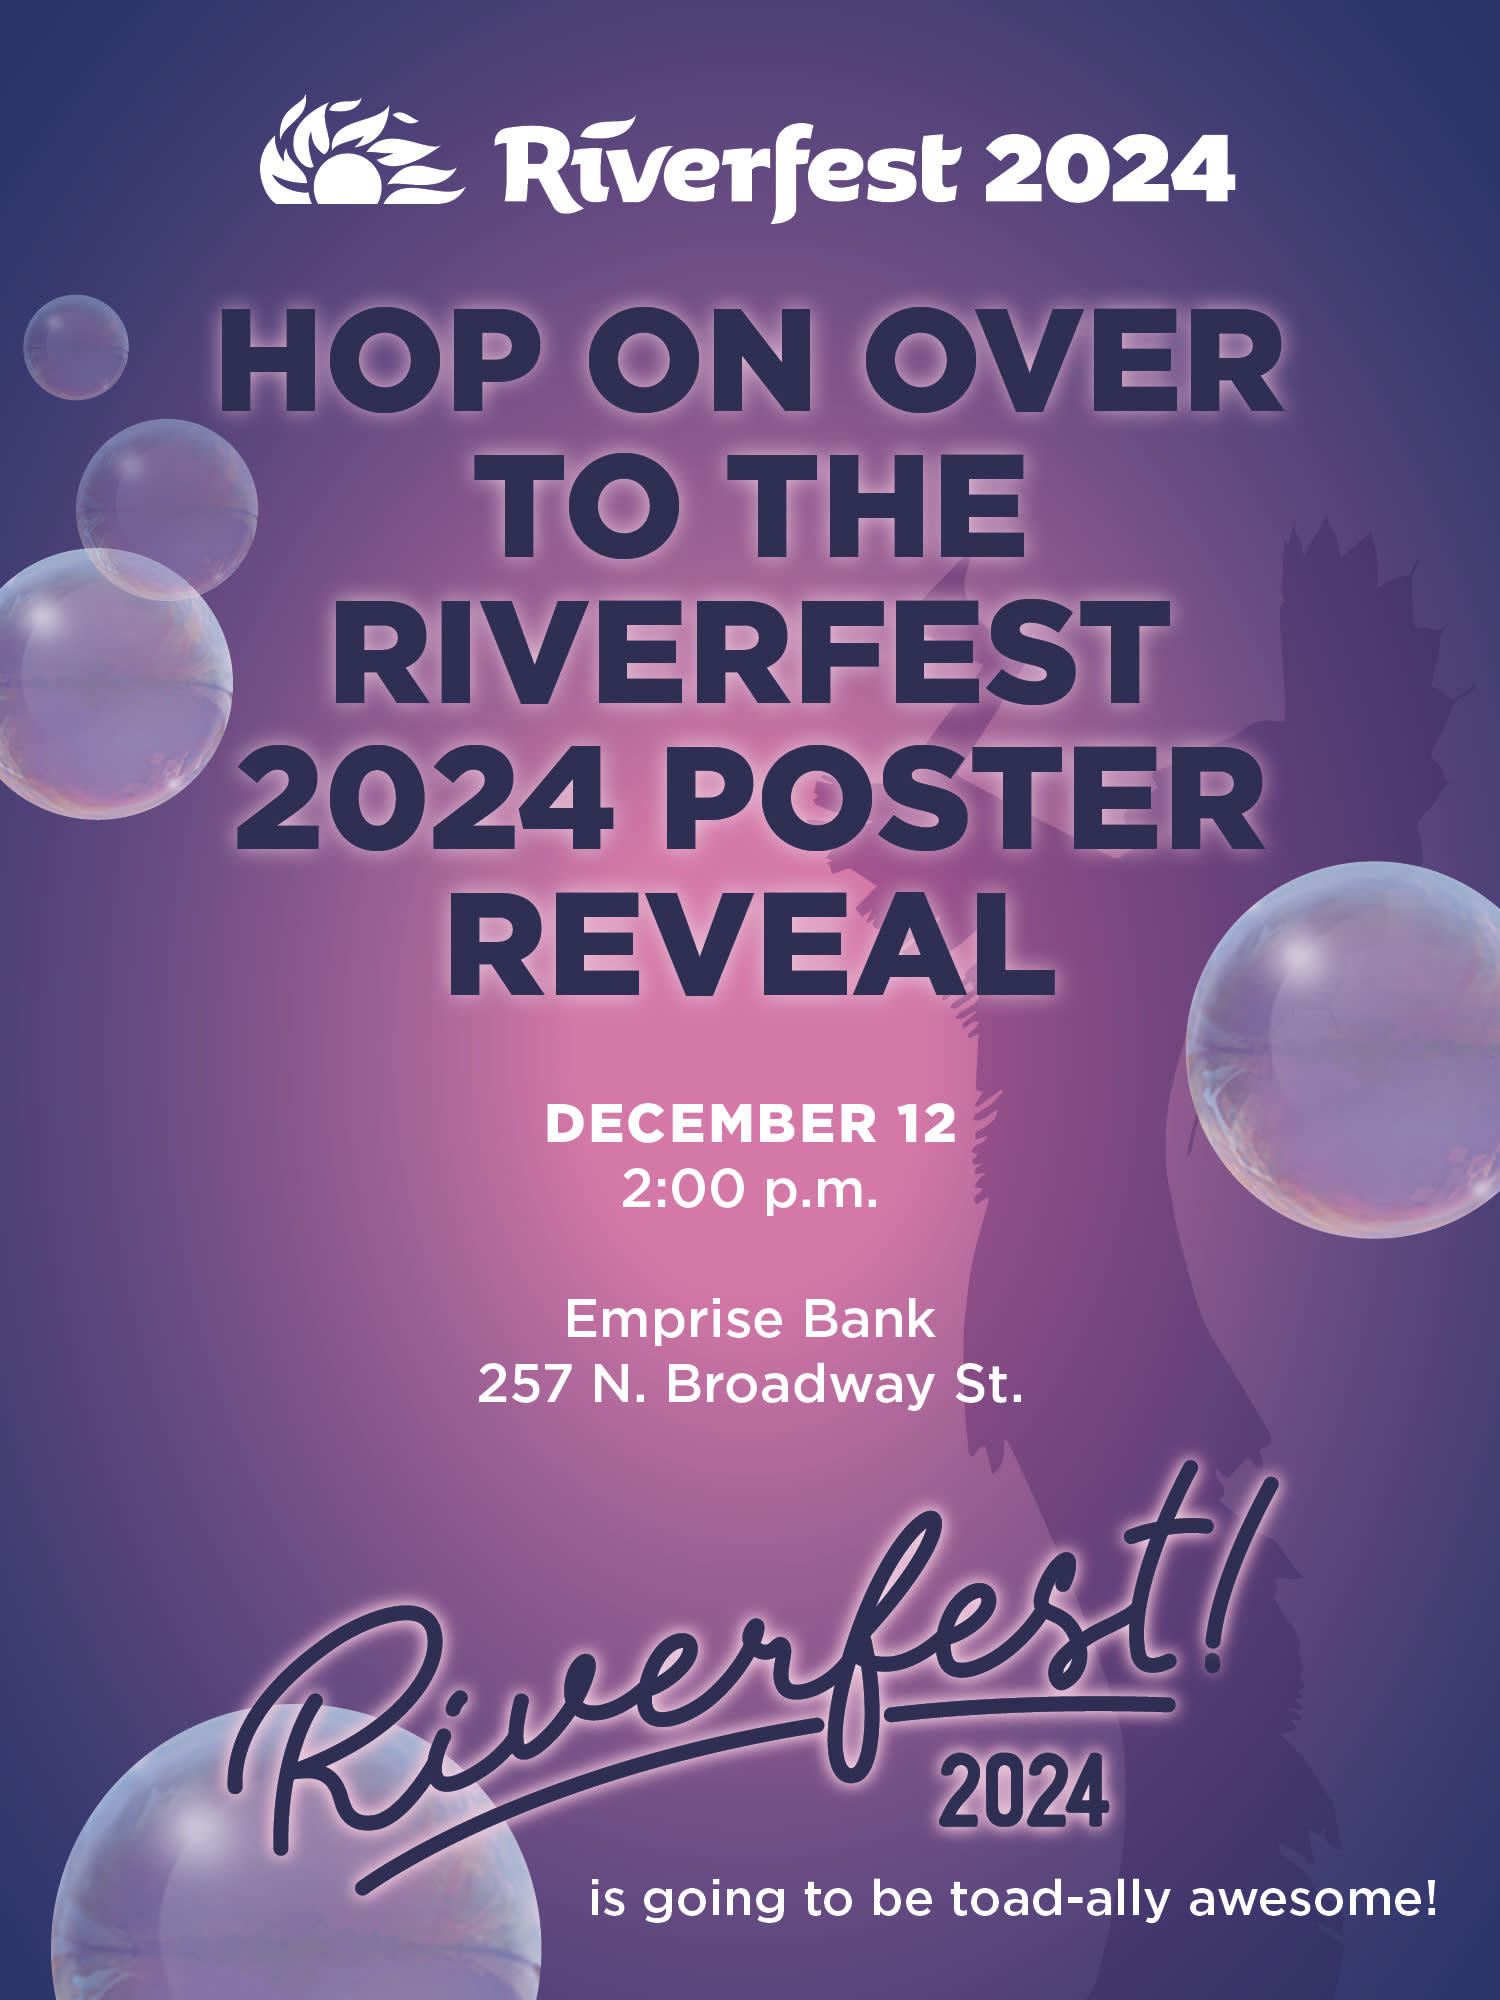 Riverfest 2024 Poster Reveal Overridden 3805